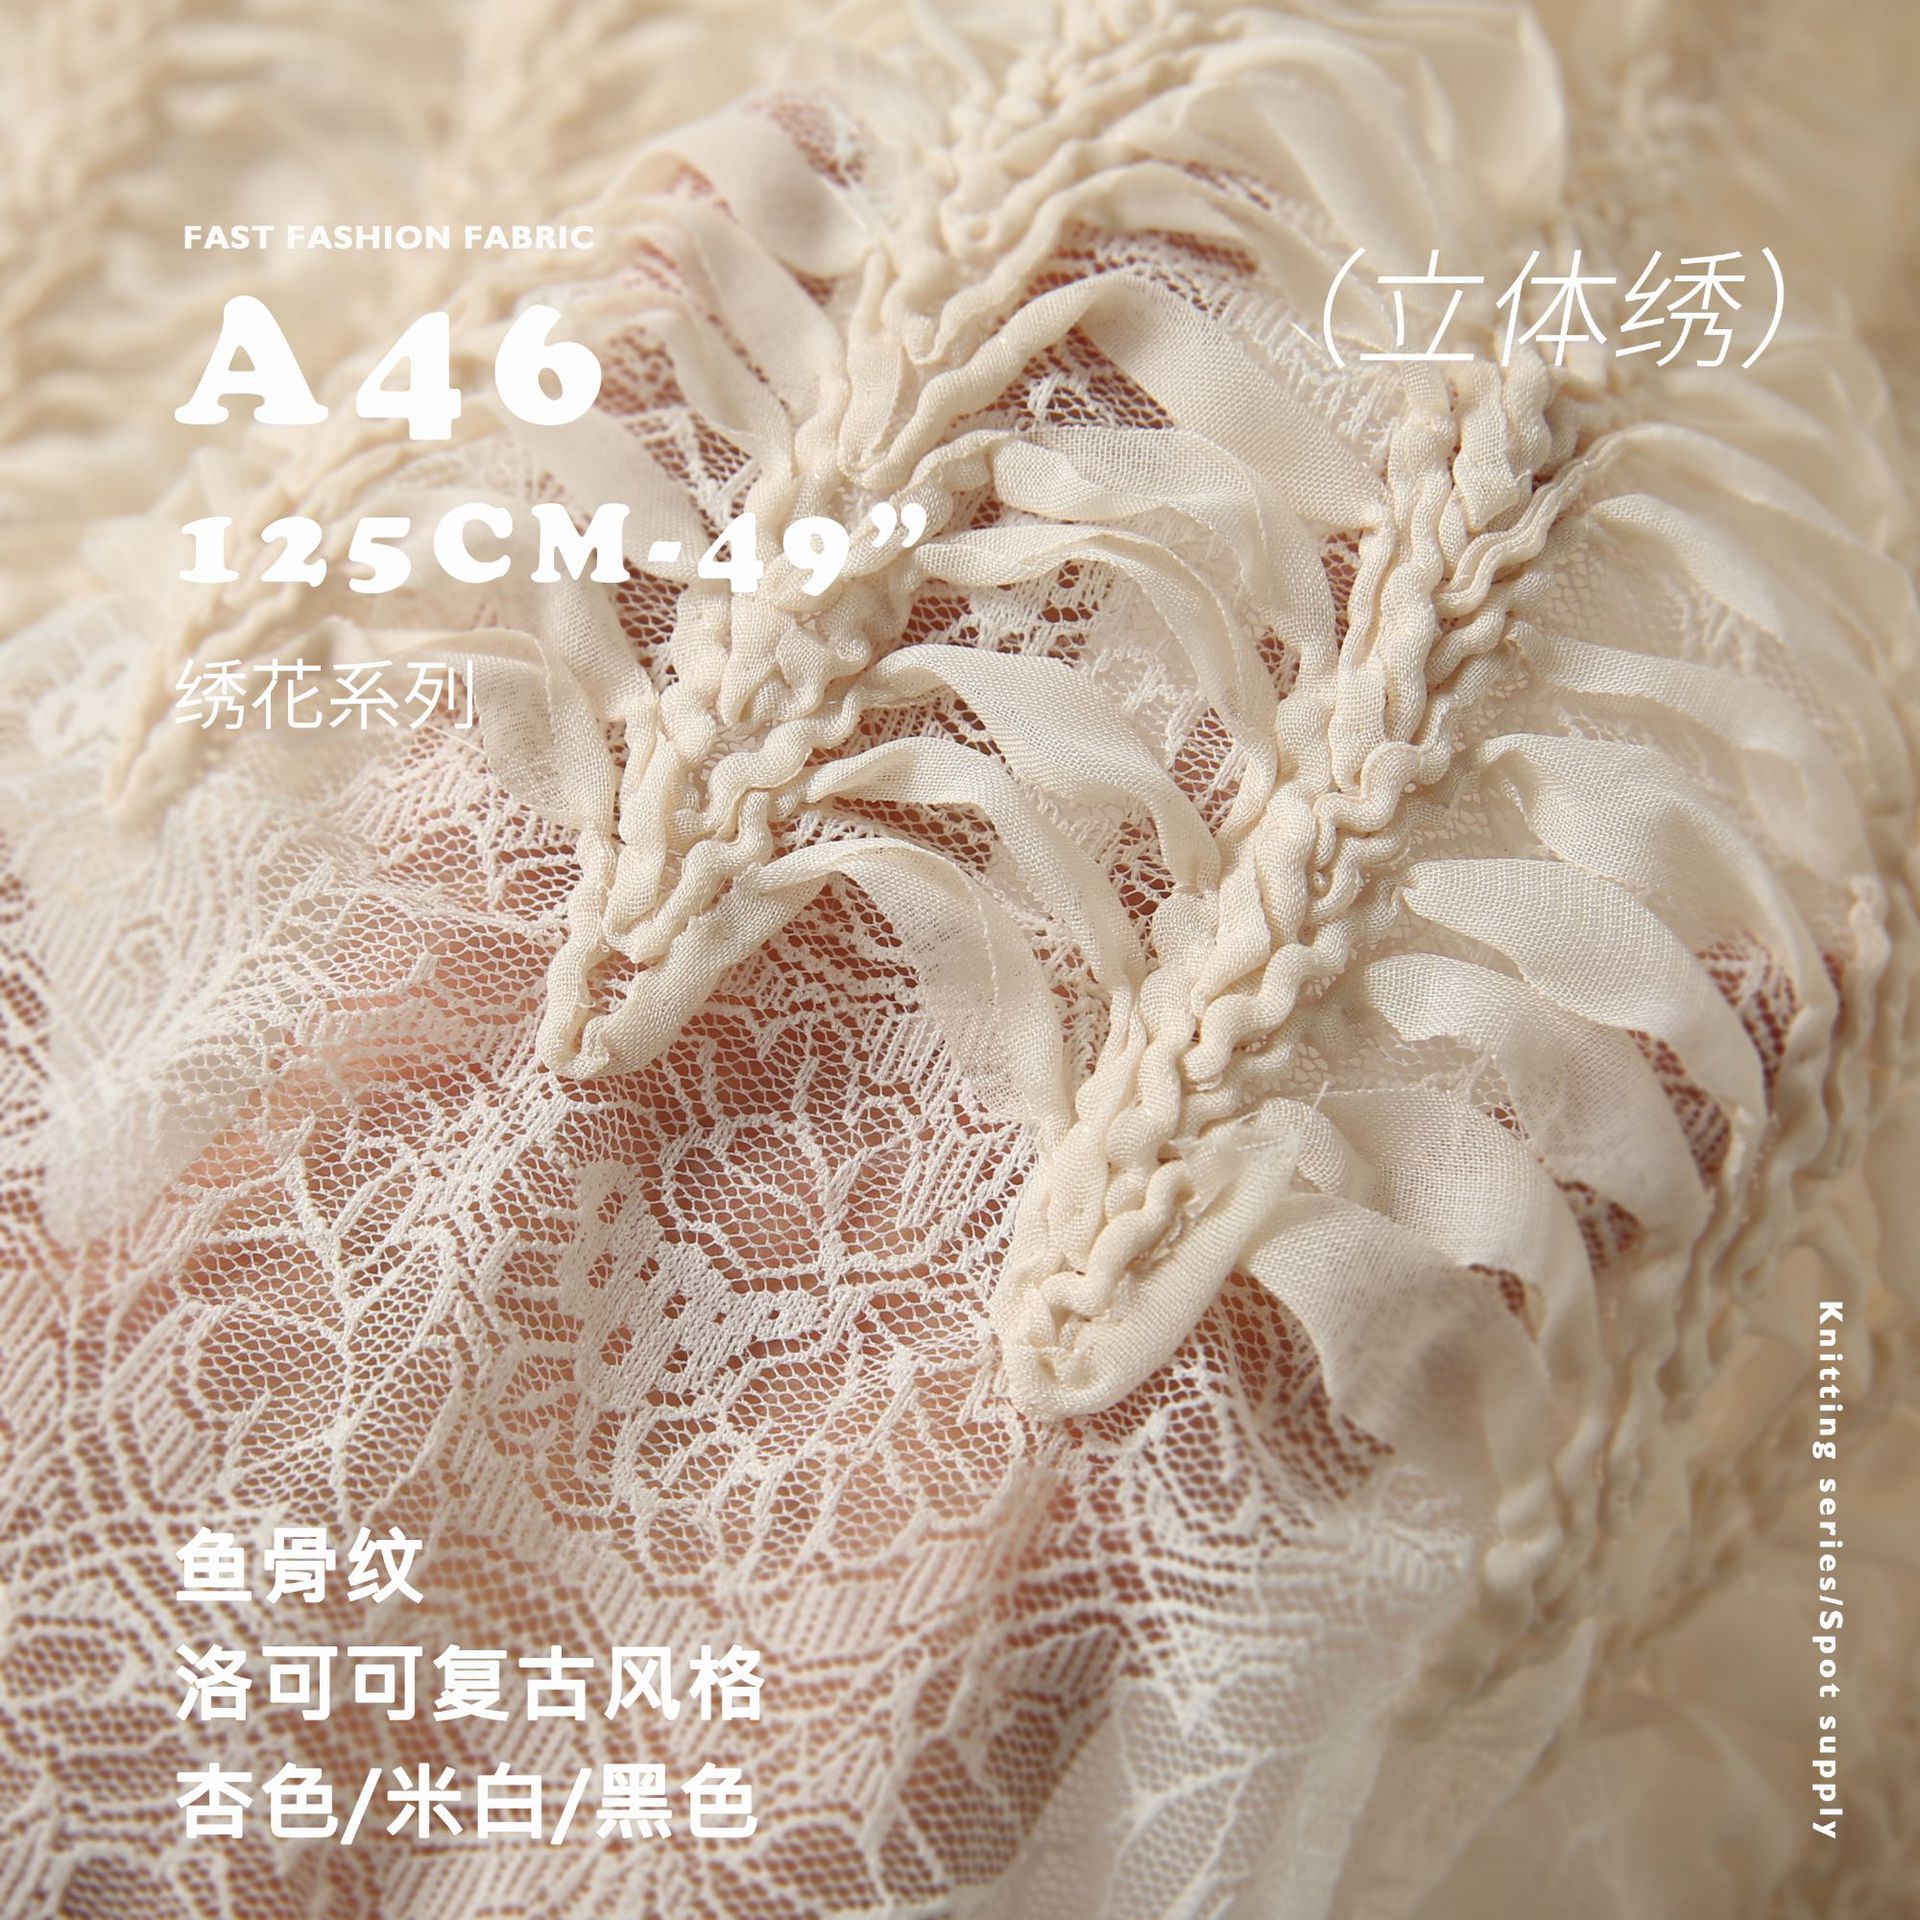 鱼骨纹 洛可可欧式风格 双层绣 绣花面料 吊带衫腰封设计布料A46